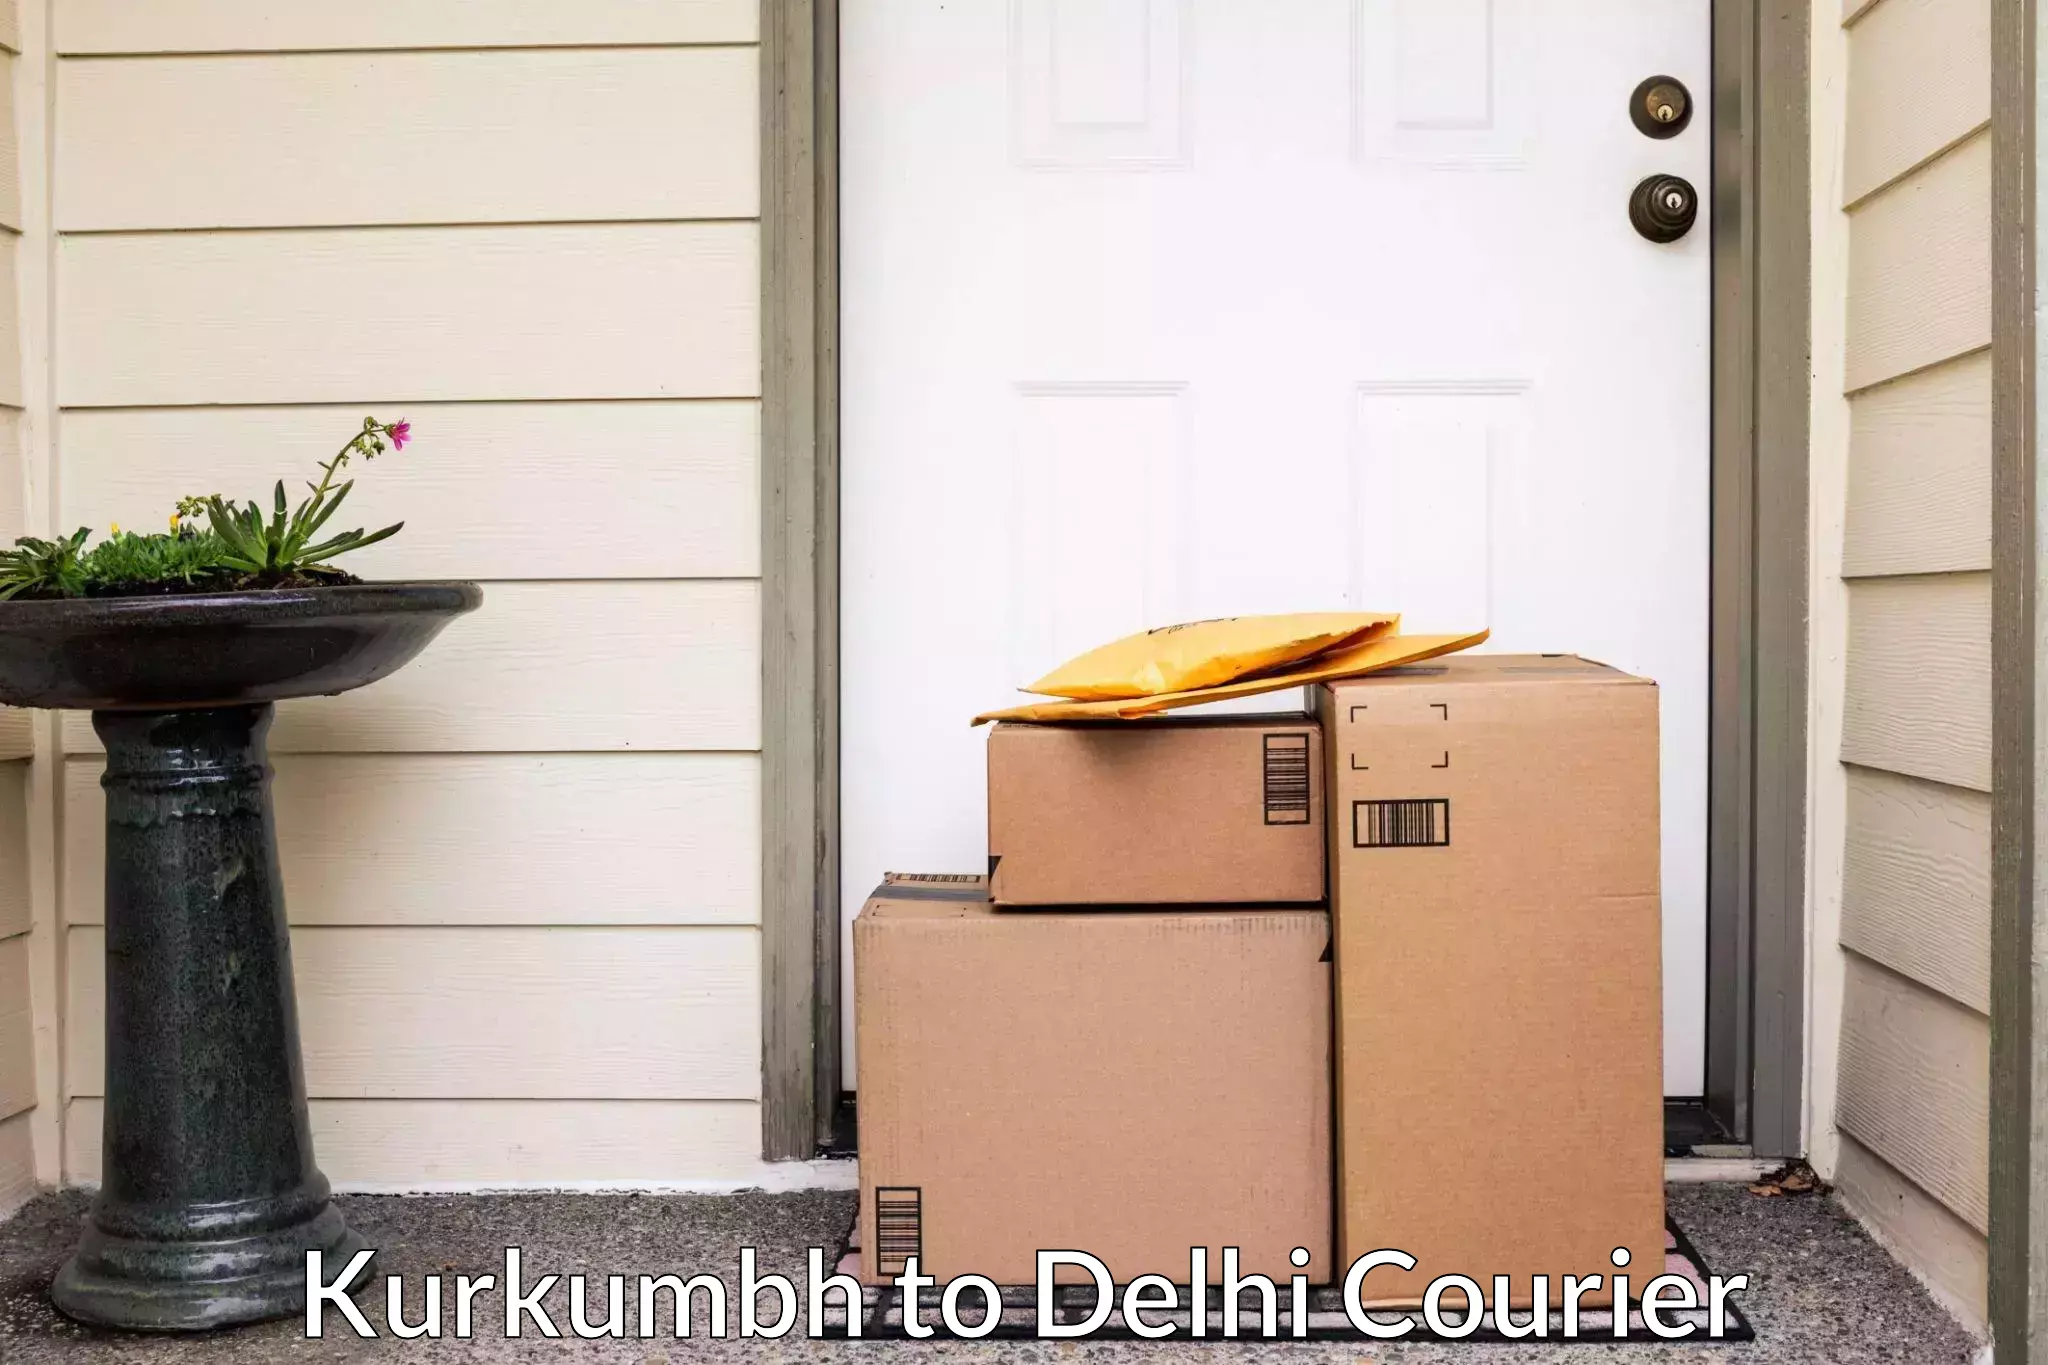 Online household goods transport in Kurkumbh to Jawaharlal Nehru University New Delhi